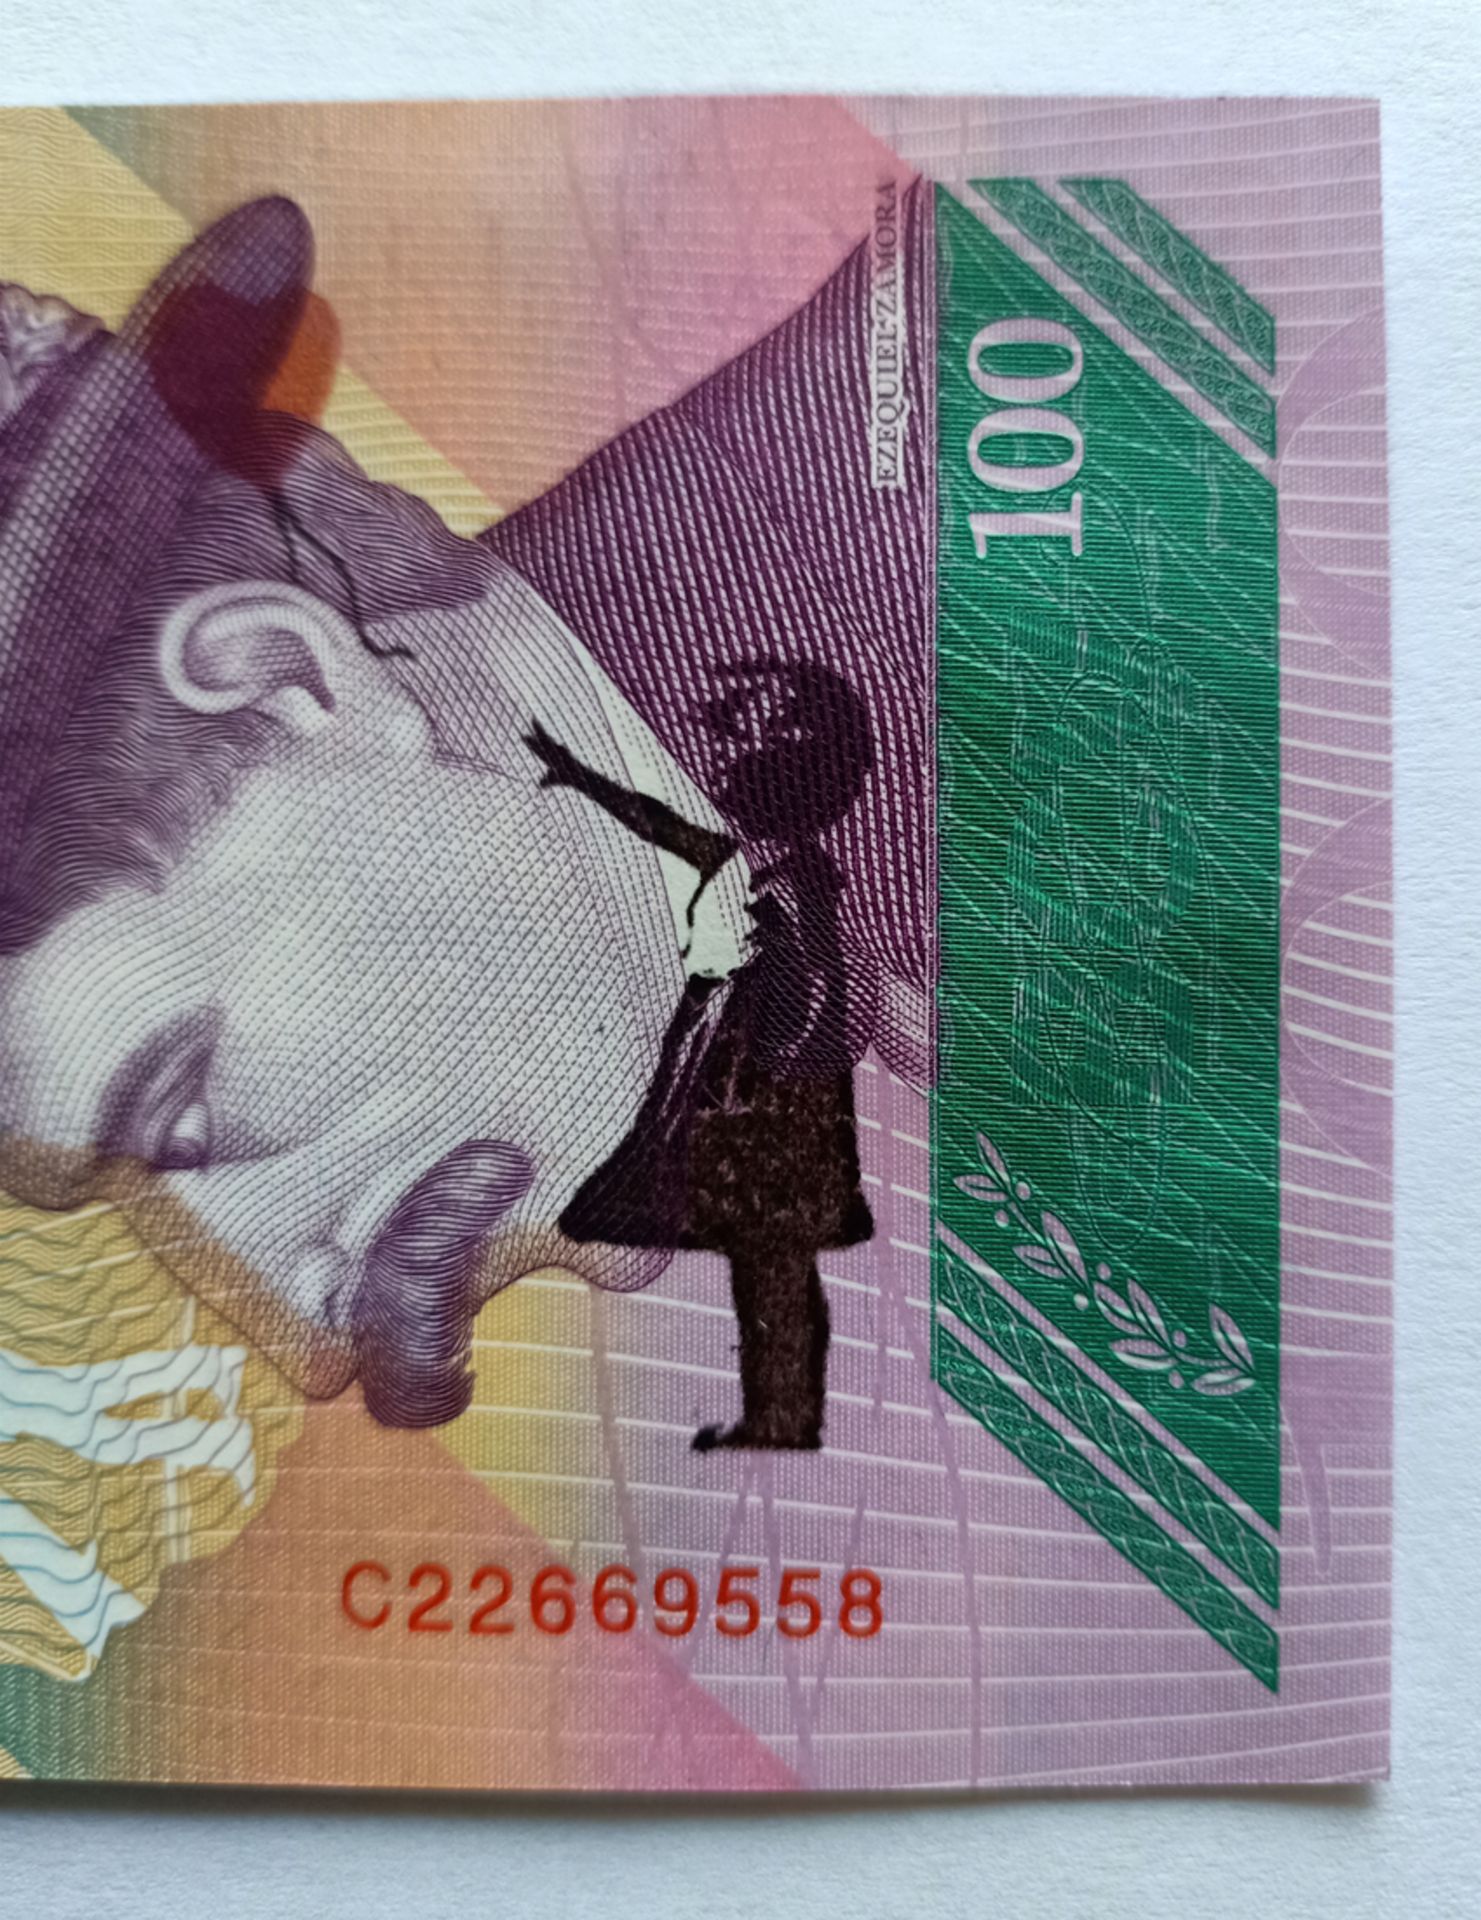 Banksy Banknote 100 Bolivariana with BanksyTag Dismaland 2015 (#0603) - Image 4 of 12